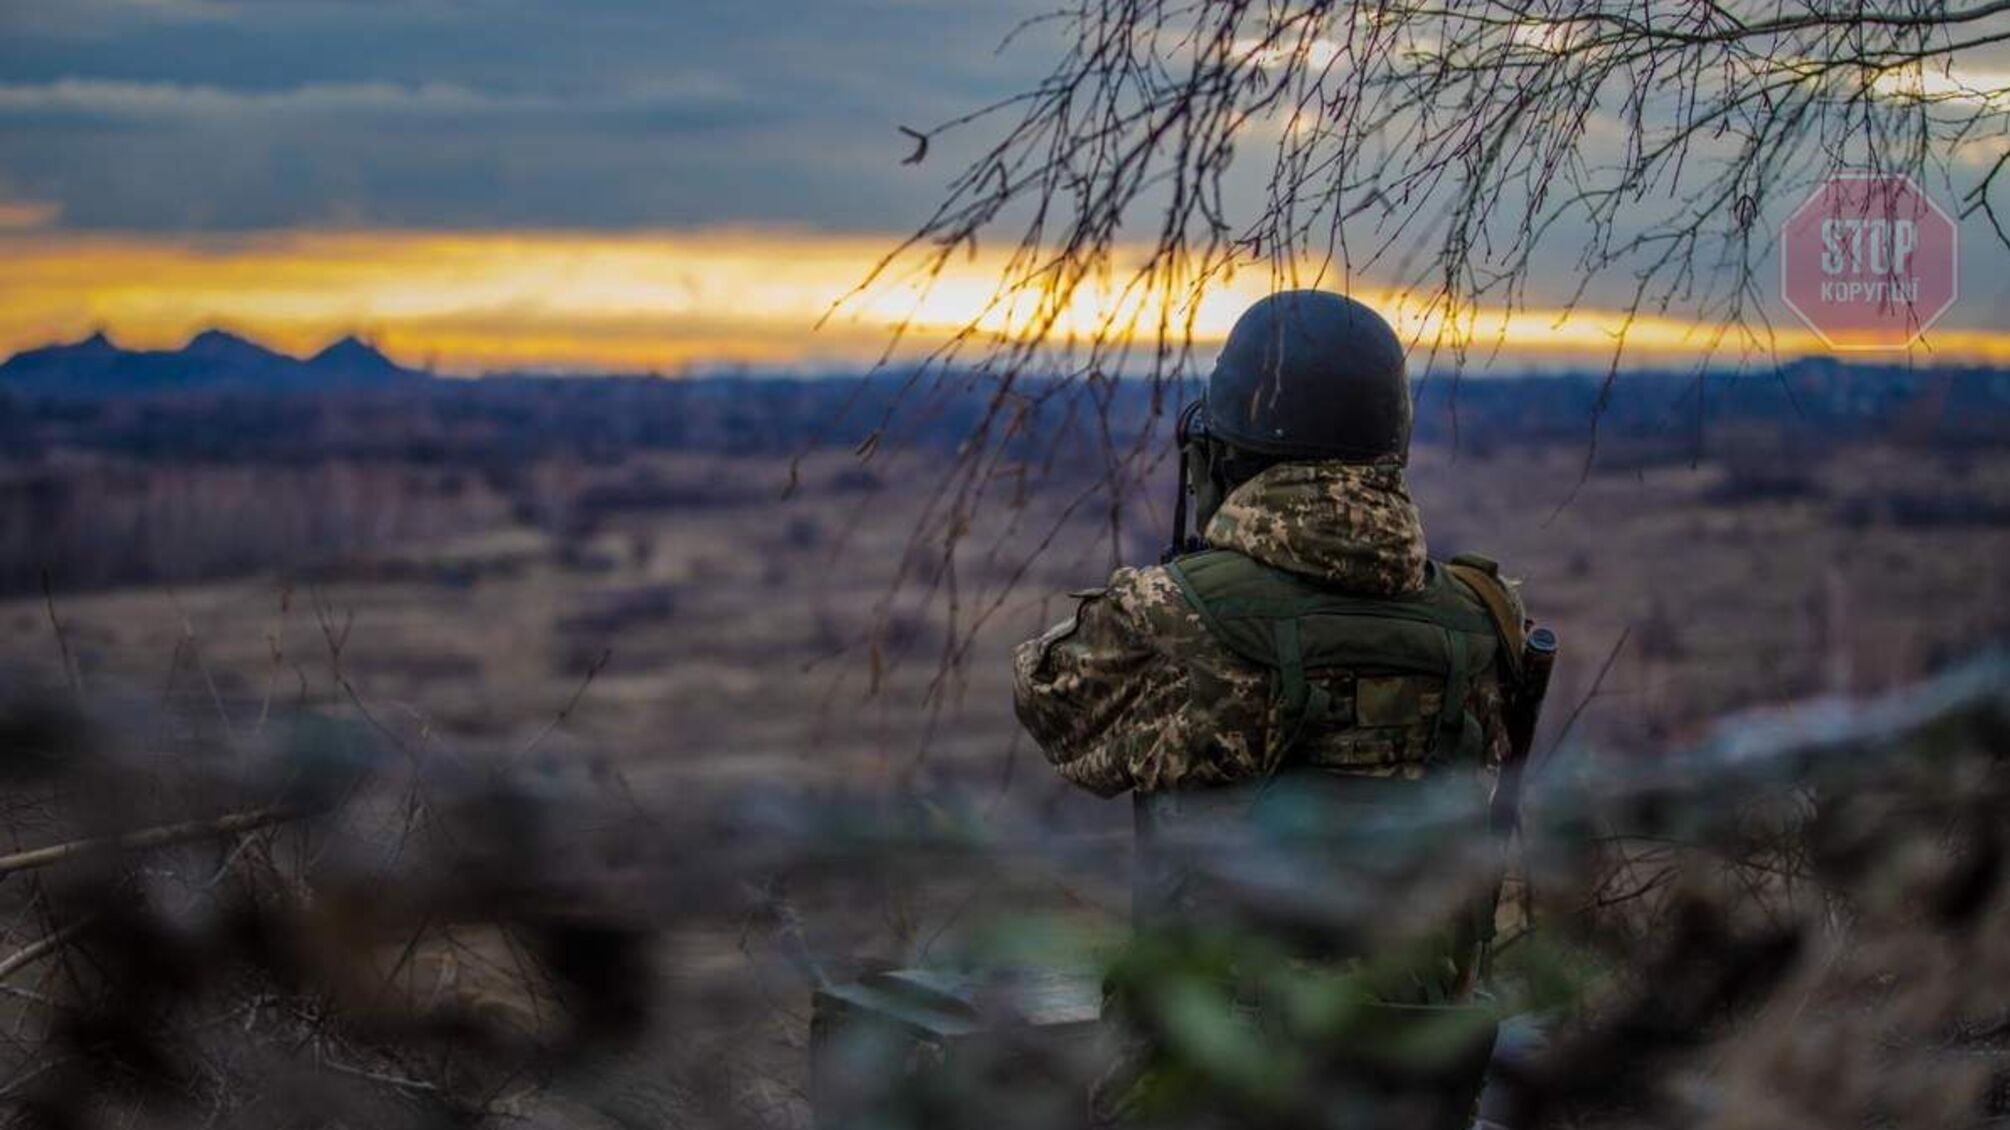 Війна триває: на Донбасі бойовики знову обстріляли позиції ЗСУ